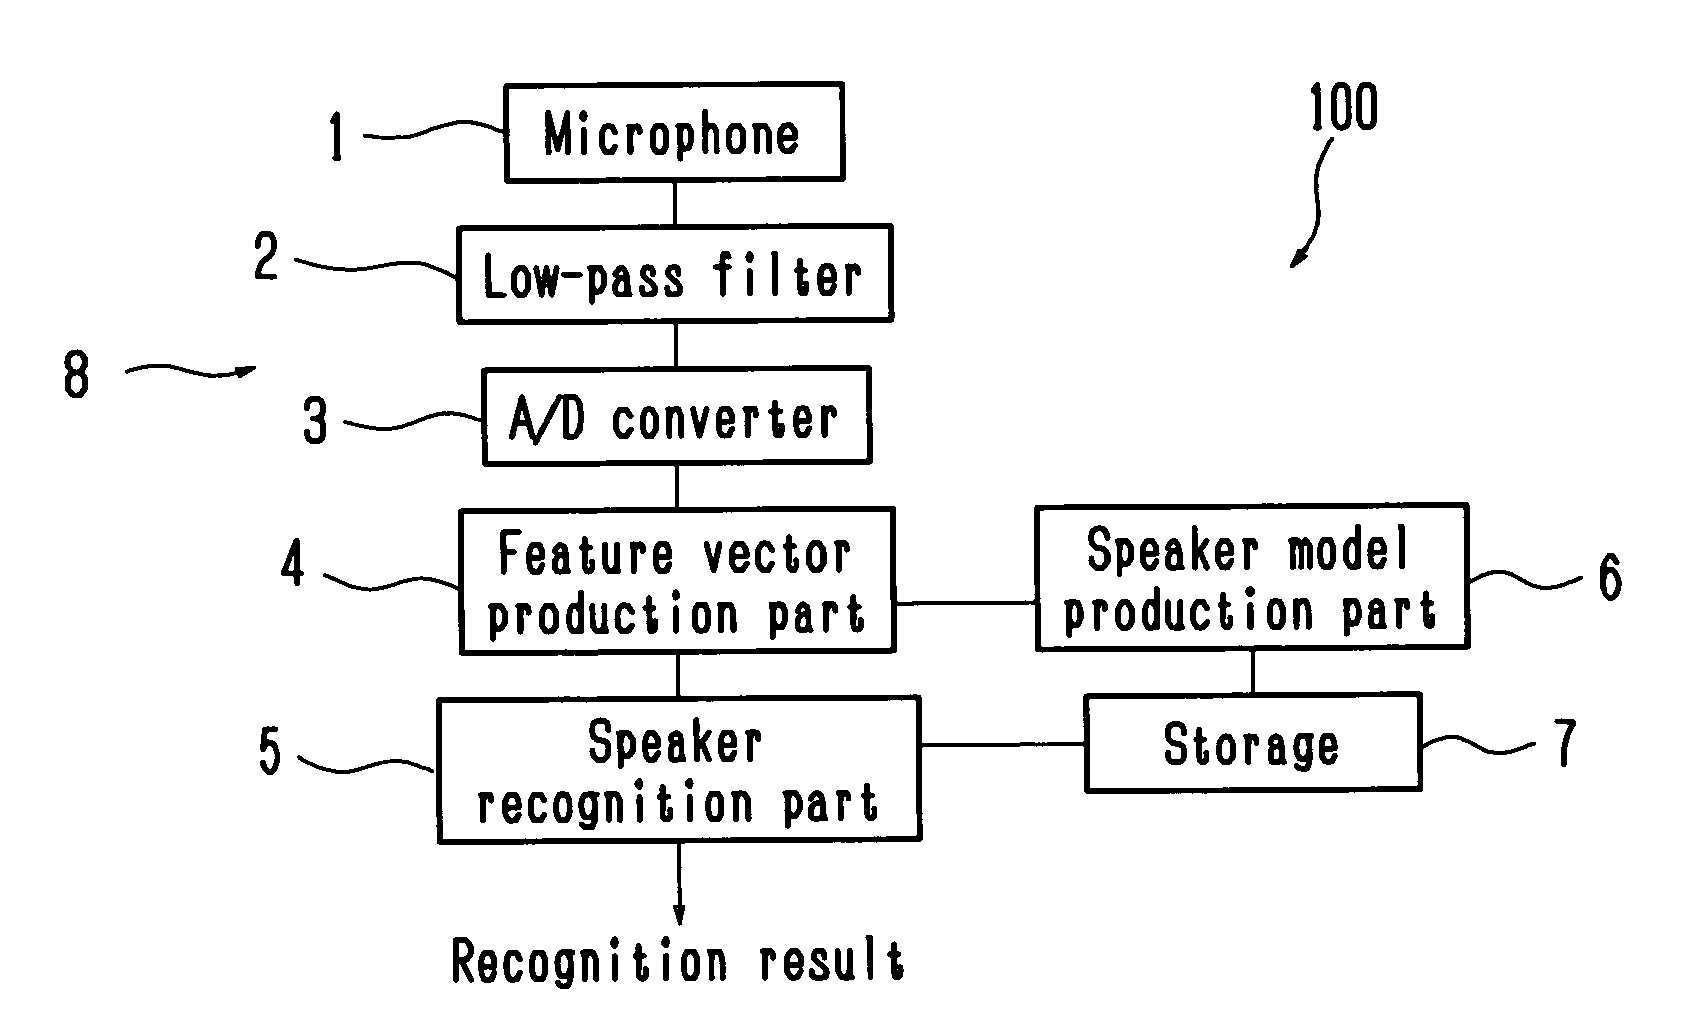 Speaker recognition apparatus, computer program for speaker recognition, and speaker recognition method